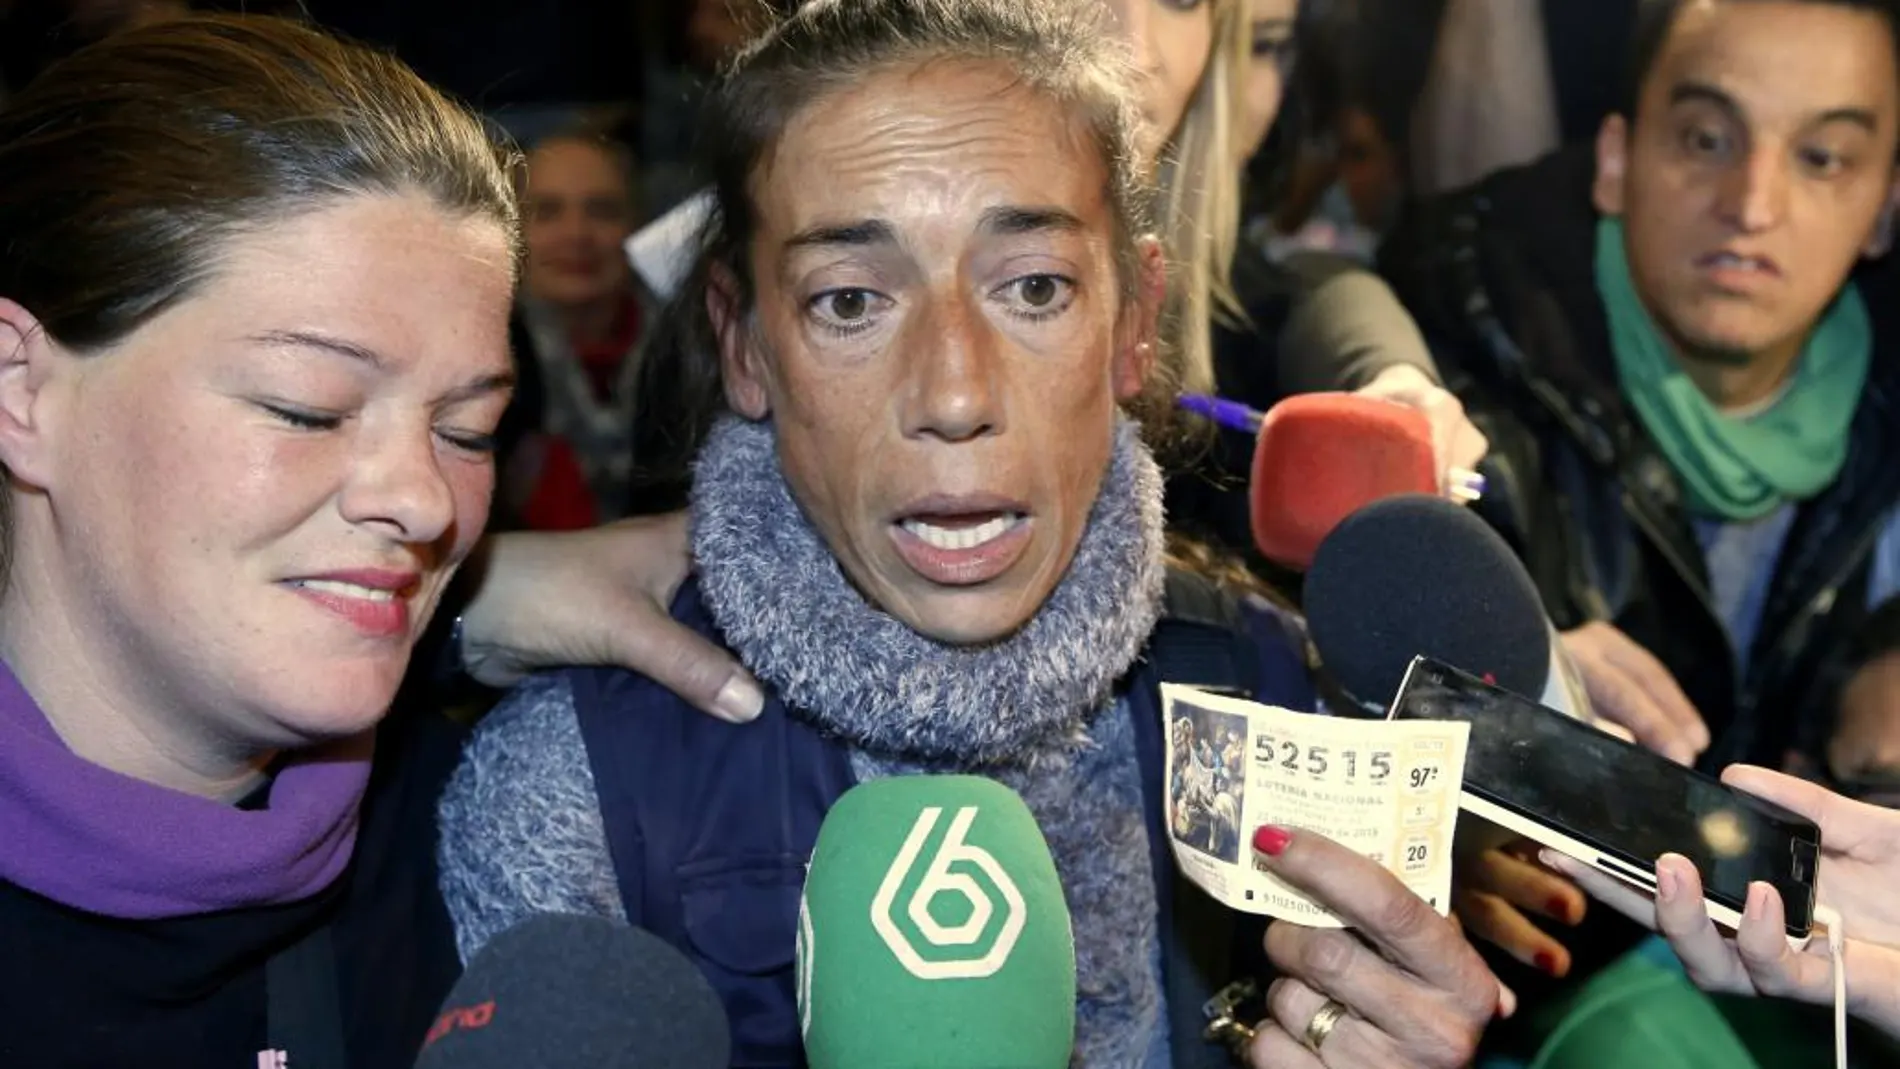 Los medios de comunicación rodean a una señora que creía que le había tocado el cuarto premio del Sorteo Extraordinario de Navidad que se celebra en el Teatro Real de Madrid, pero se había equivocado